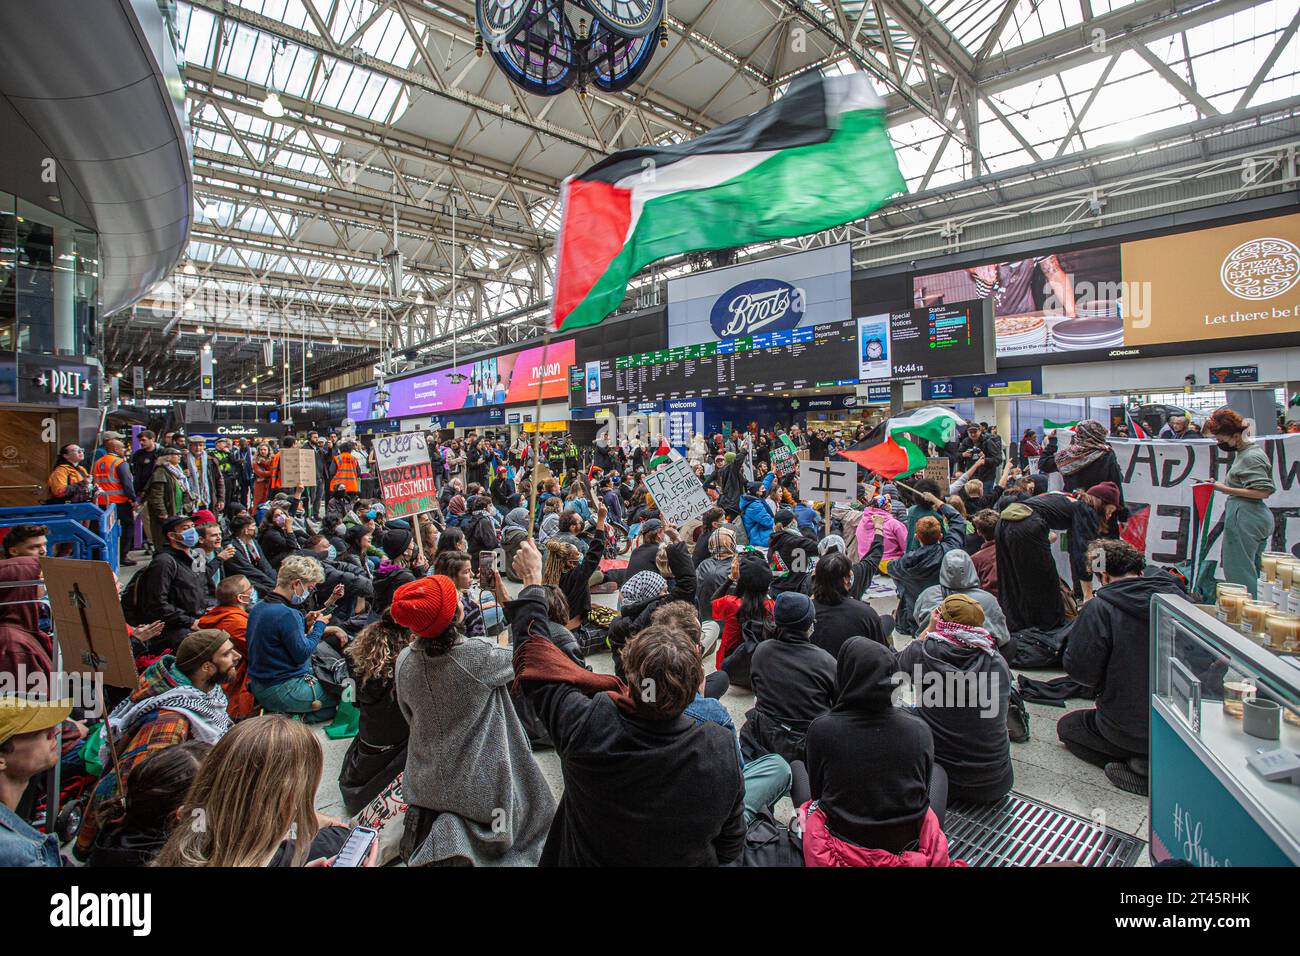 Londra, Regno Unito. 28 ottobre 2023. I manifestanti pro Palestina bloccano l'atrio della stazione di Waterloo. Gli ebrei britannici protestano con cartelli. Immagine di credito: © Horst Friedrichs credito: horst friedrichs/Alamy Live News Foto Stock